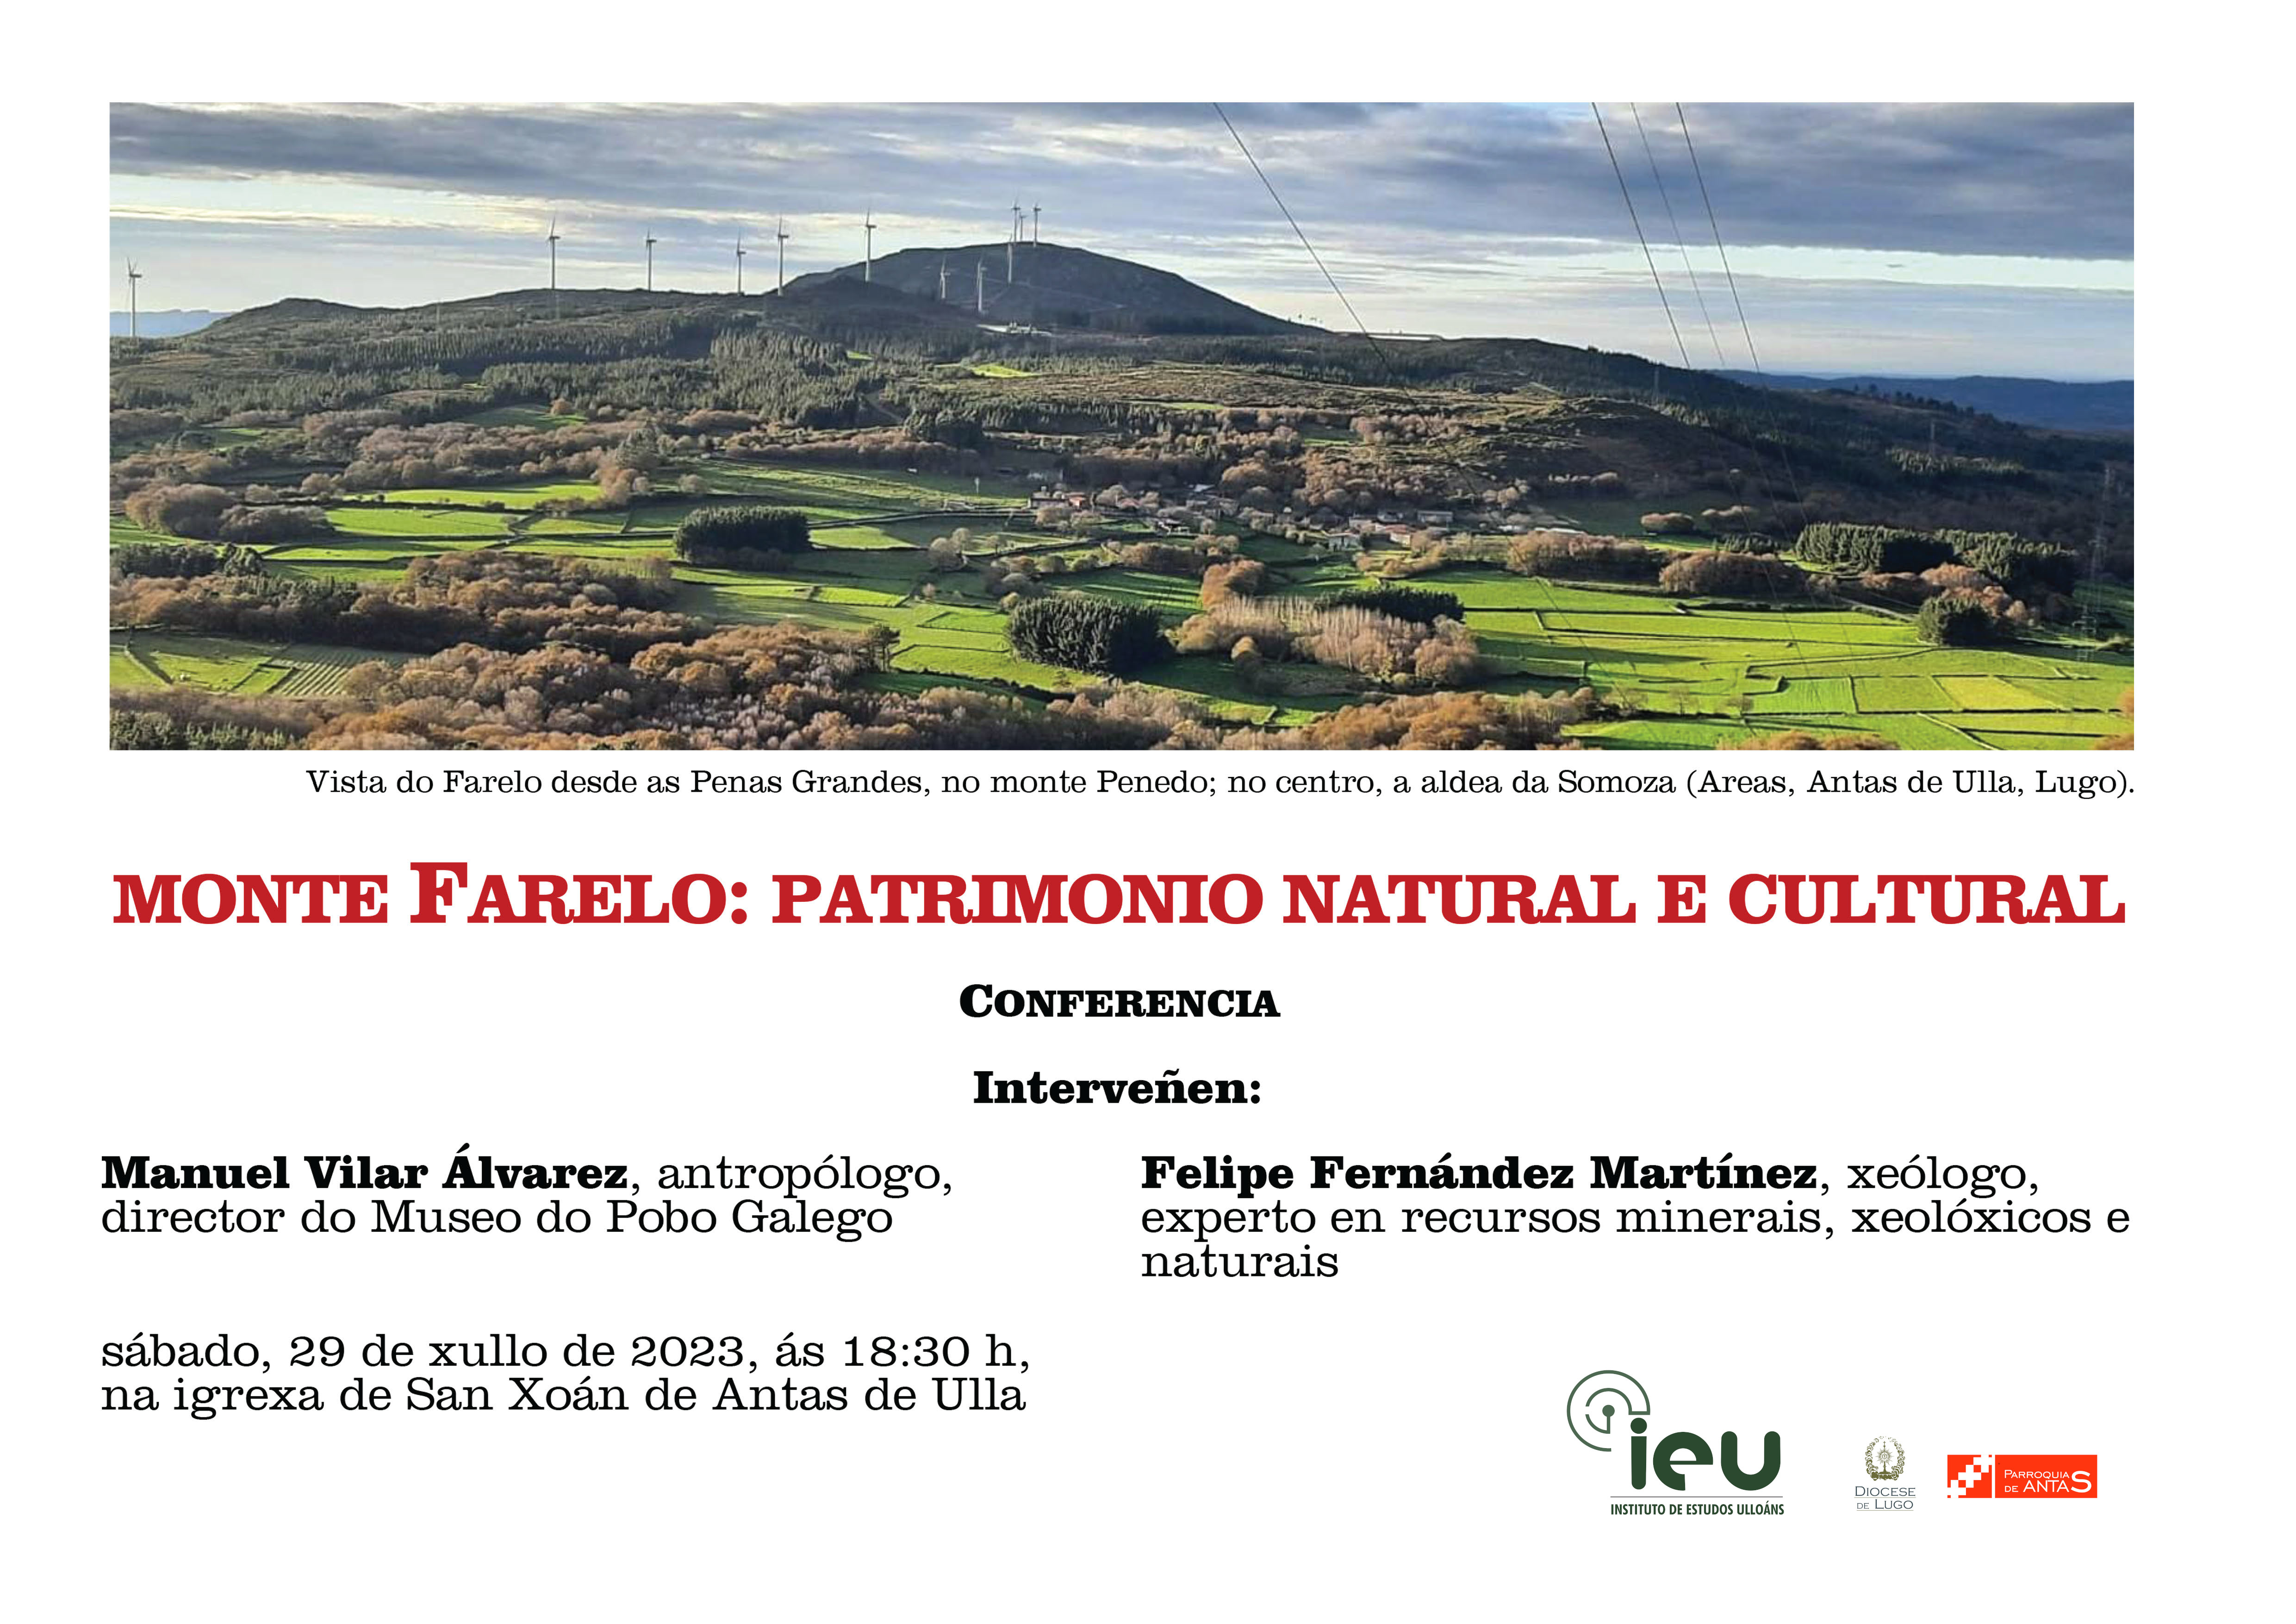 conferencia patrimonio Monte Farelo, Instituto de Estudos Ulloáns